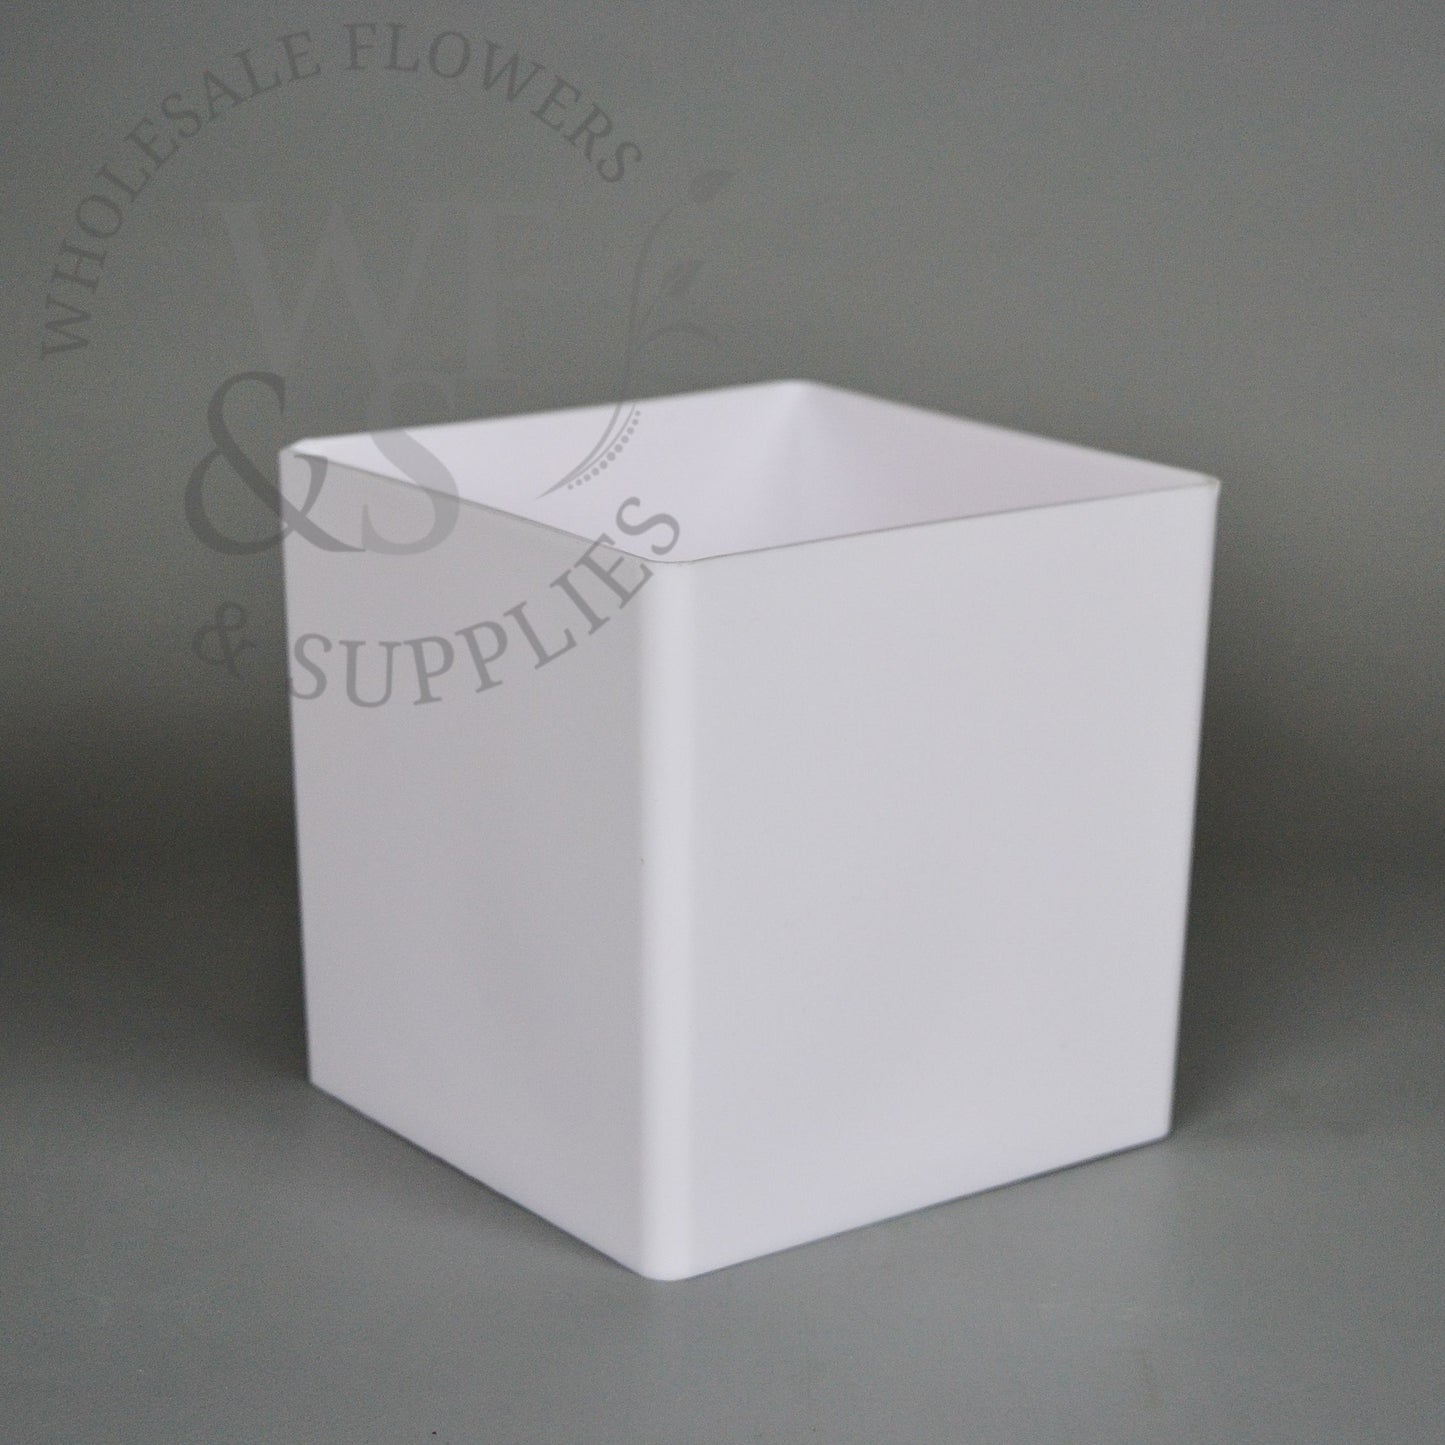 5" Plastic Cube Flower Vase - White